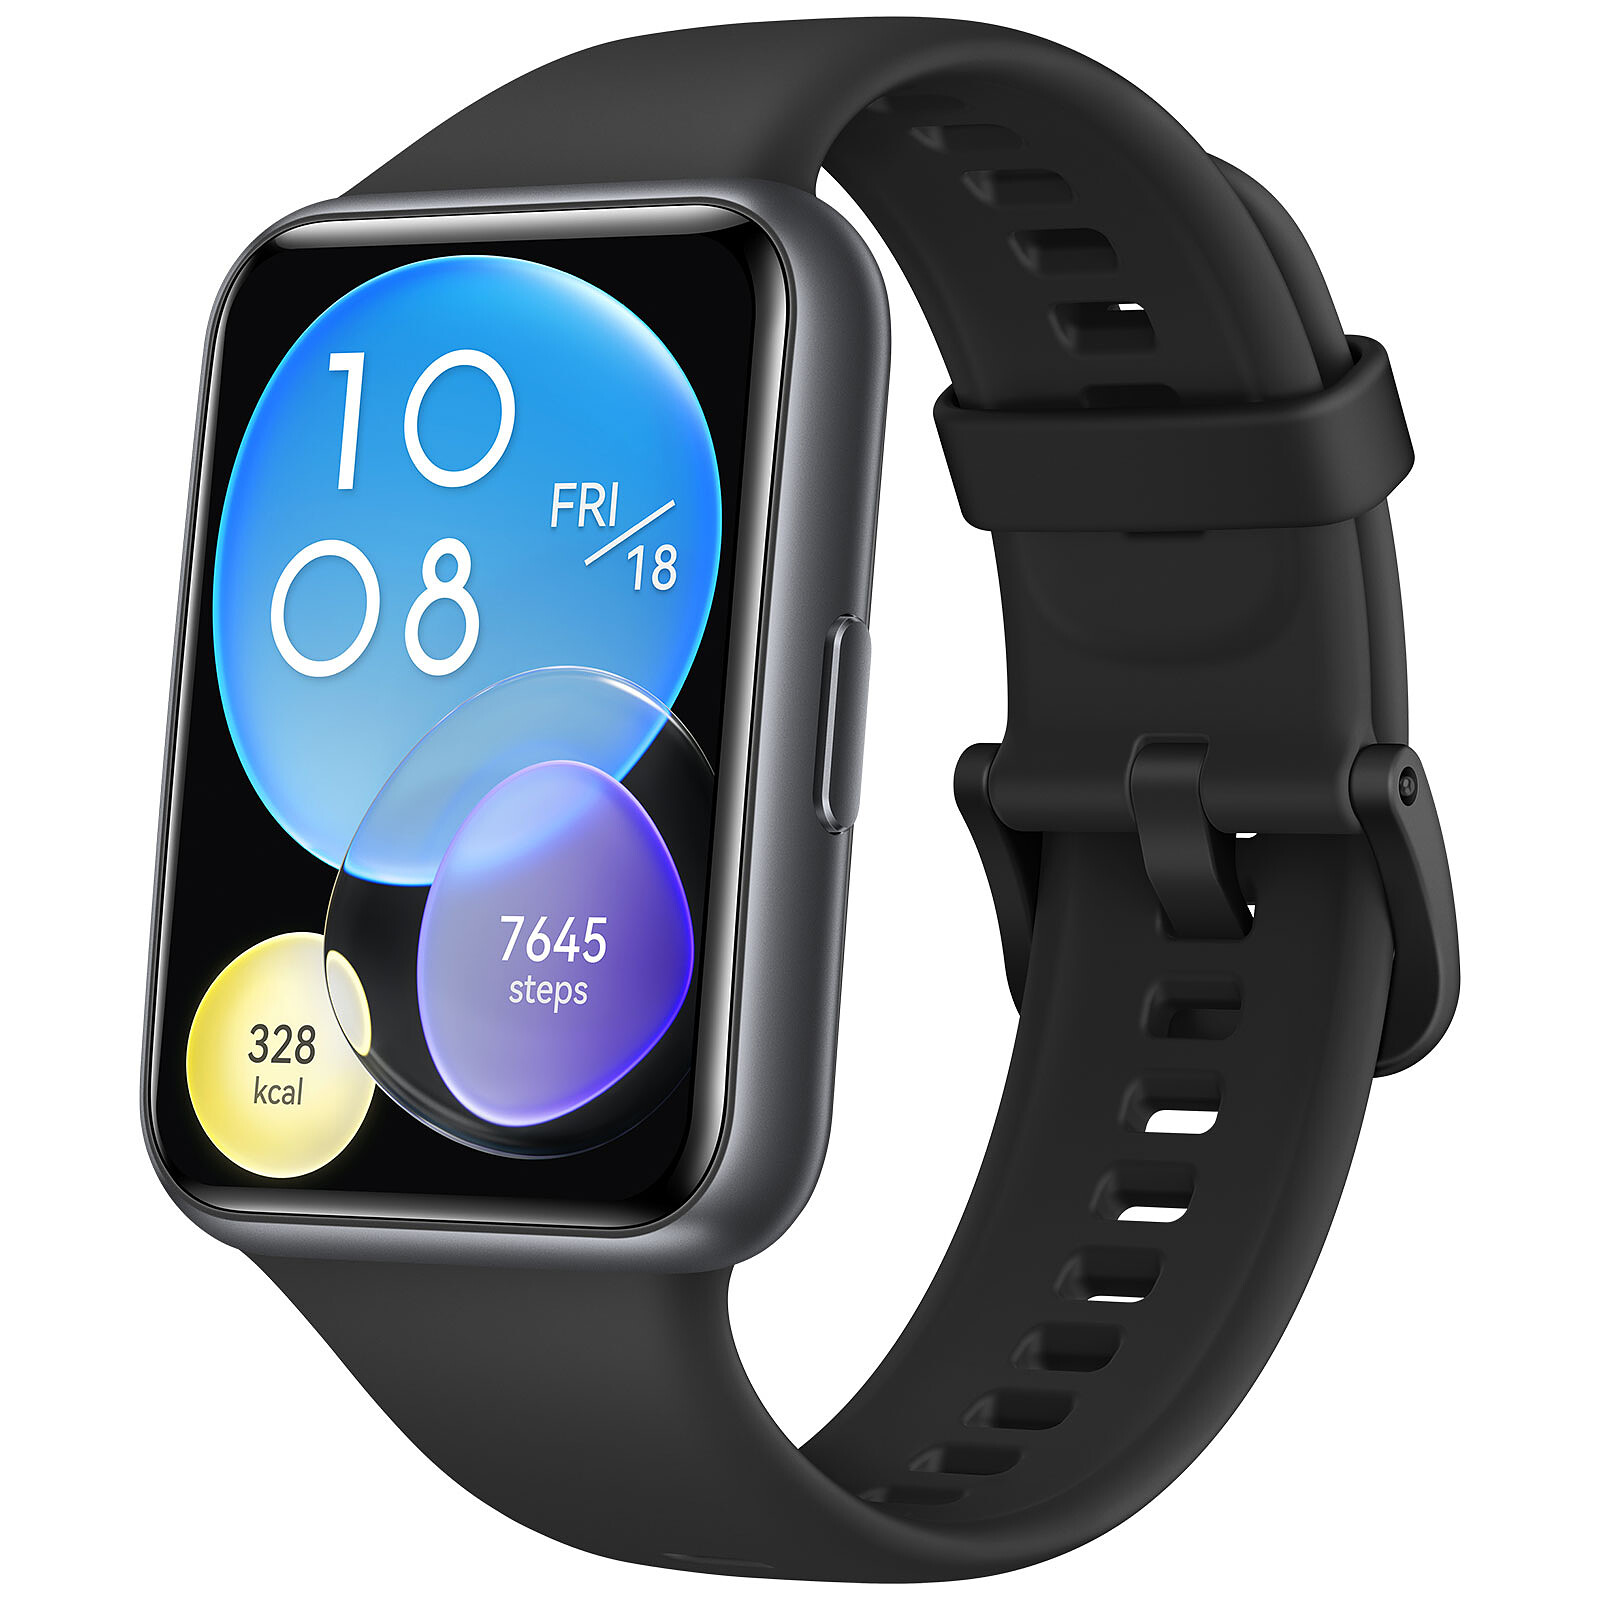 Nuevos Huawei Watch 3 y Watch 3 Pro: características, precio y ficha técnica